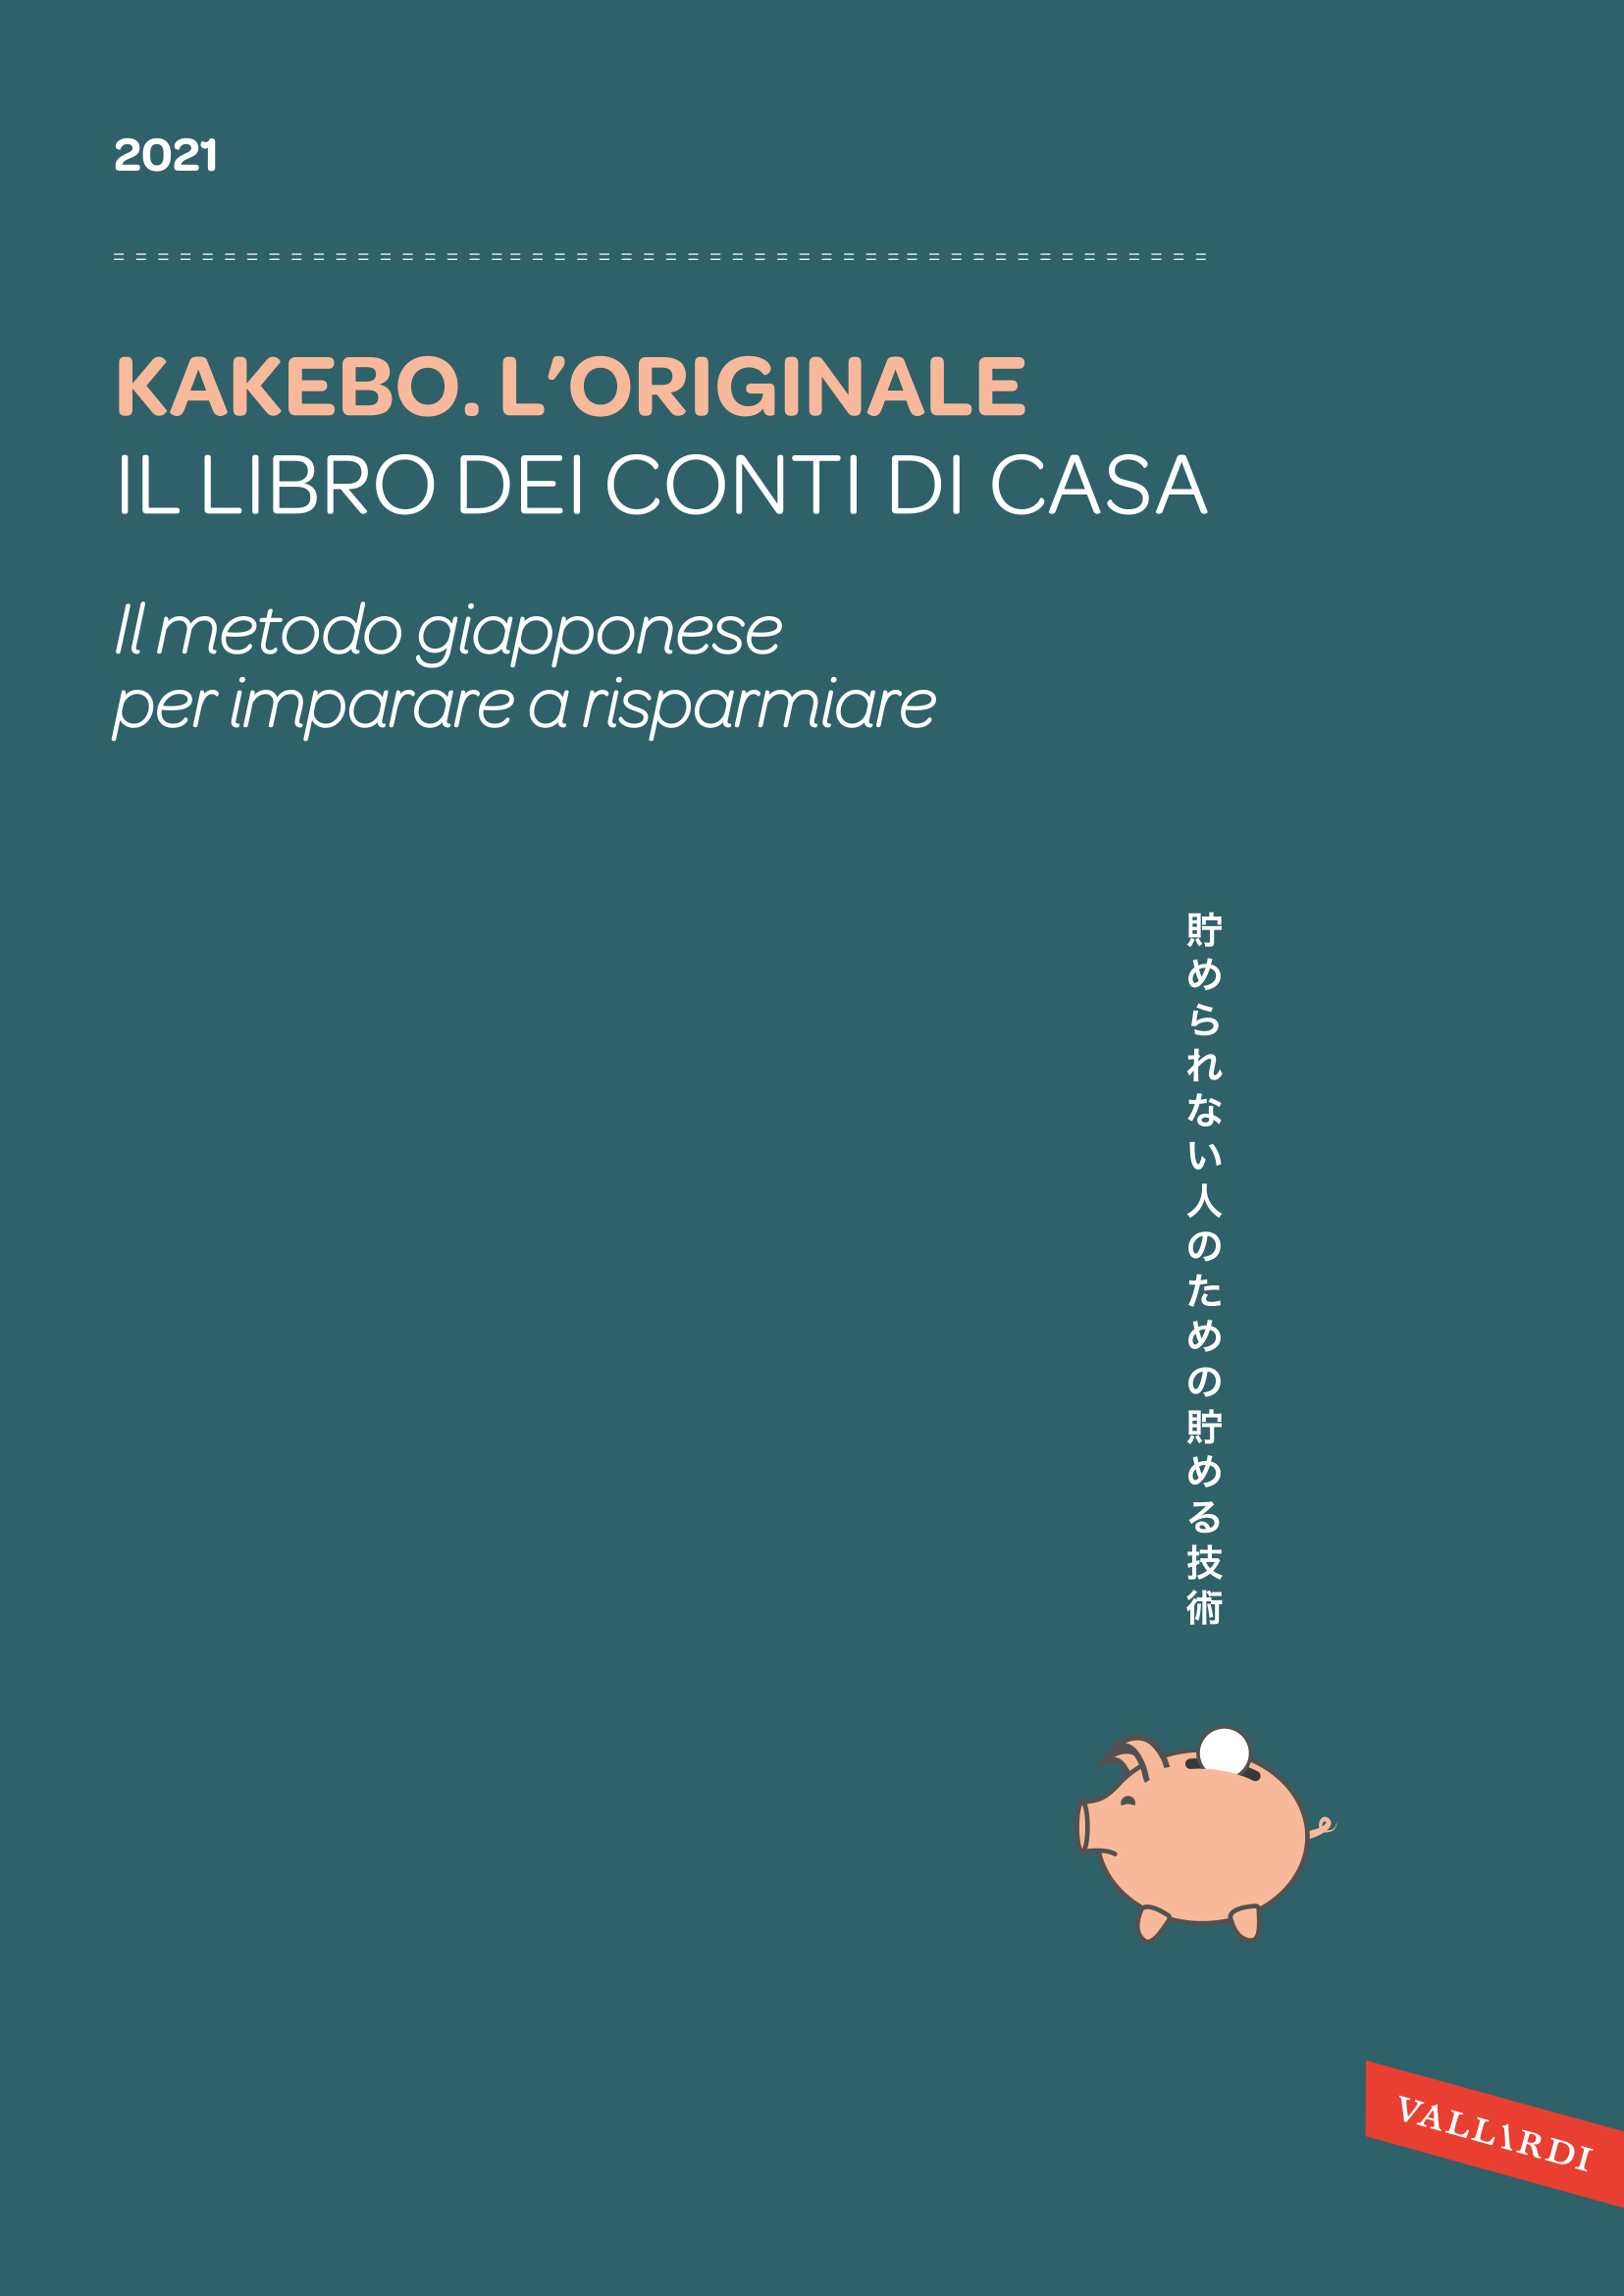 Image of Kakebo. L'originale 2021. Il libro dei conti di casa